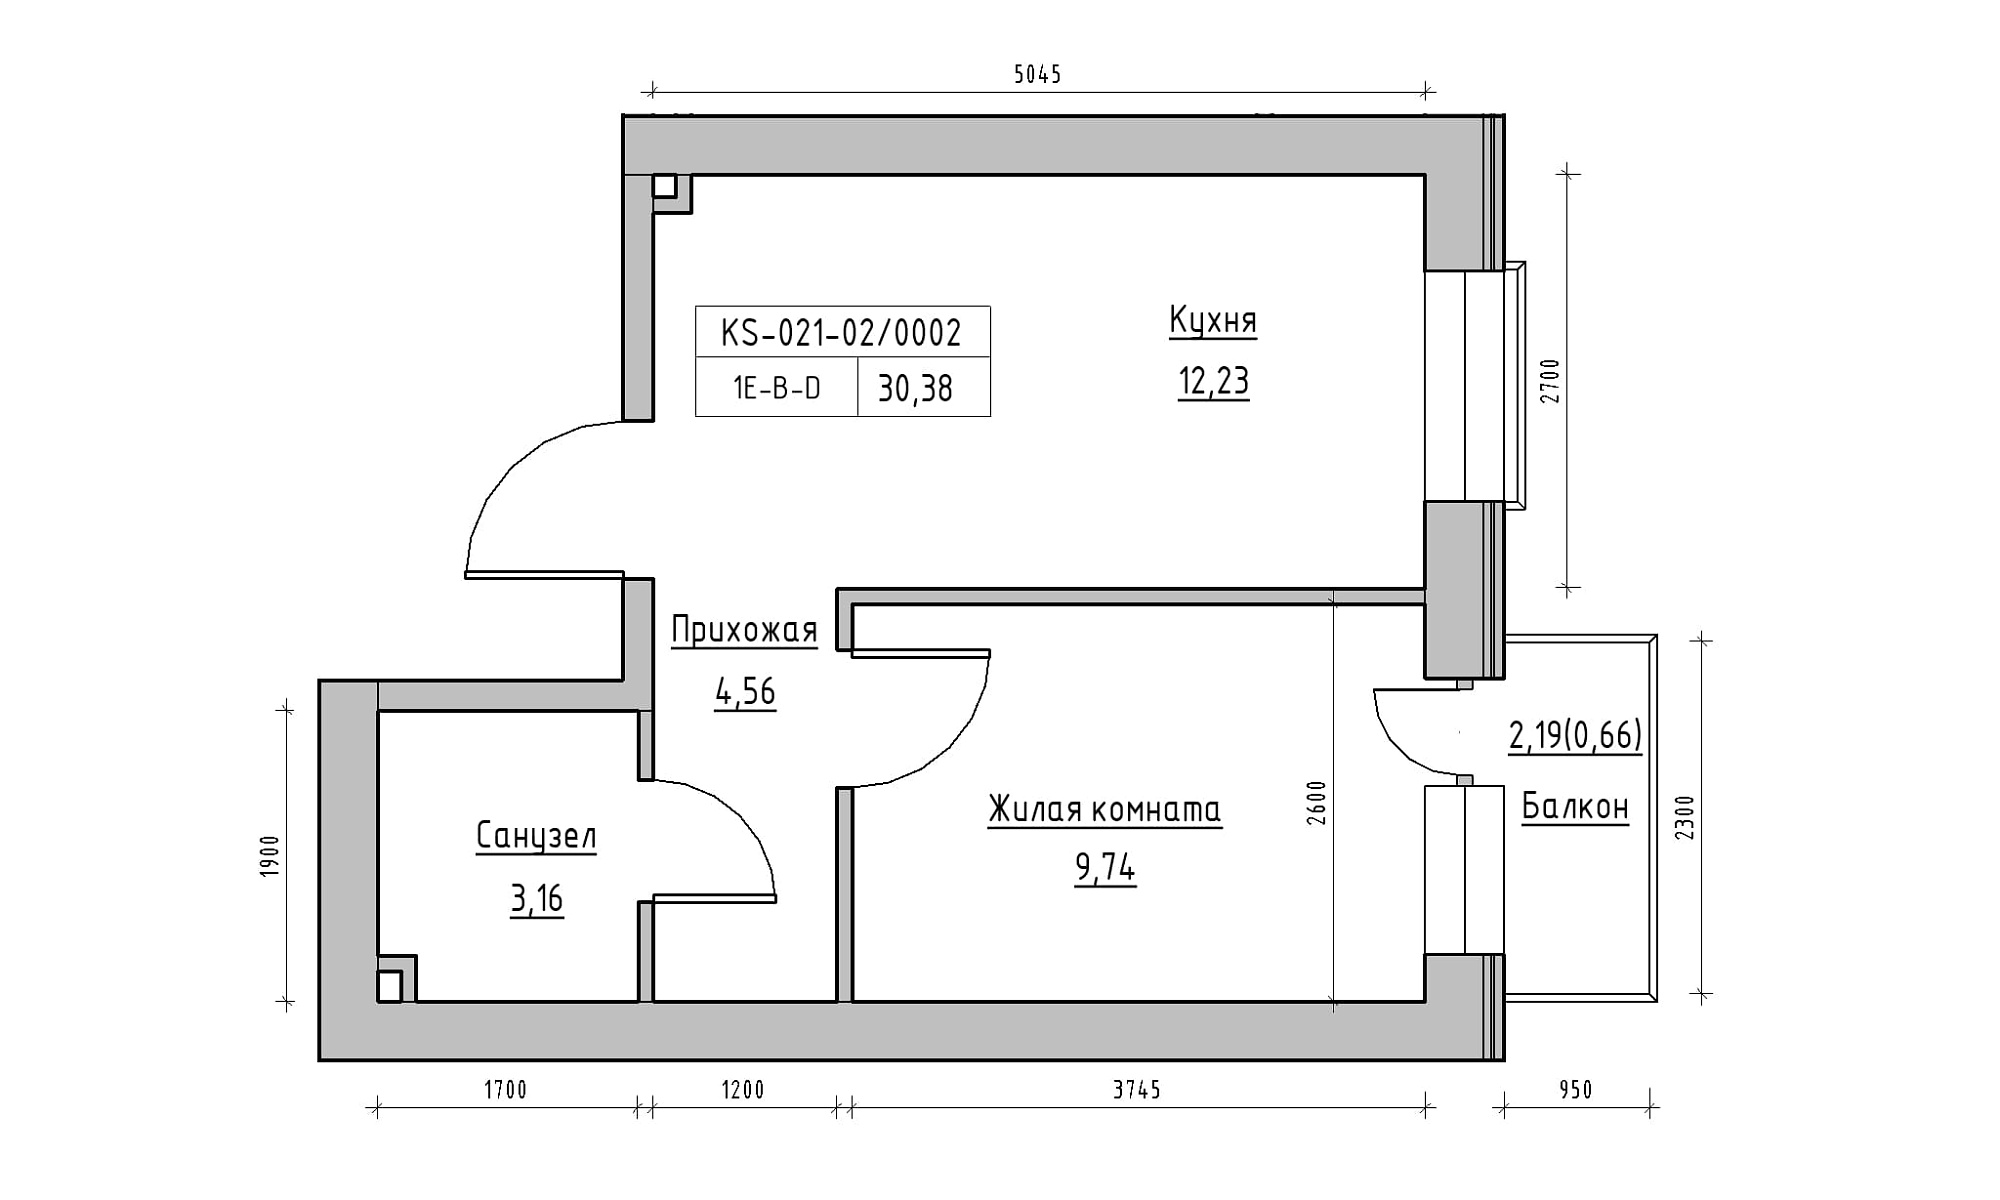 Планування 1-к квартира площею 30.38м2, KS-021-02/0002.